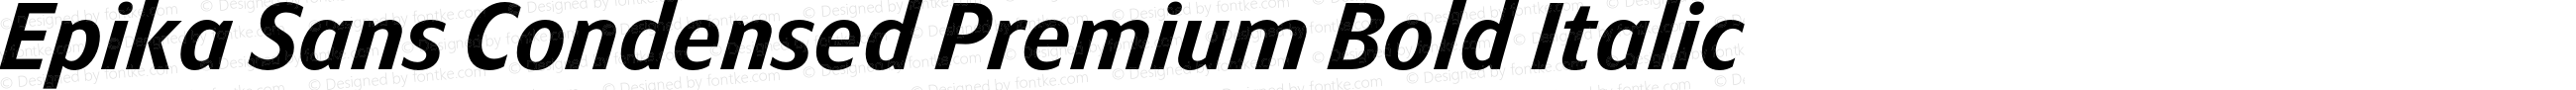 Epika Sans Condensed Premium Bold Italic